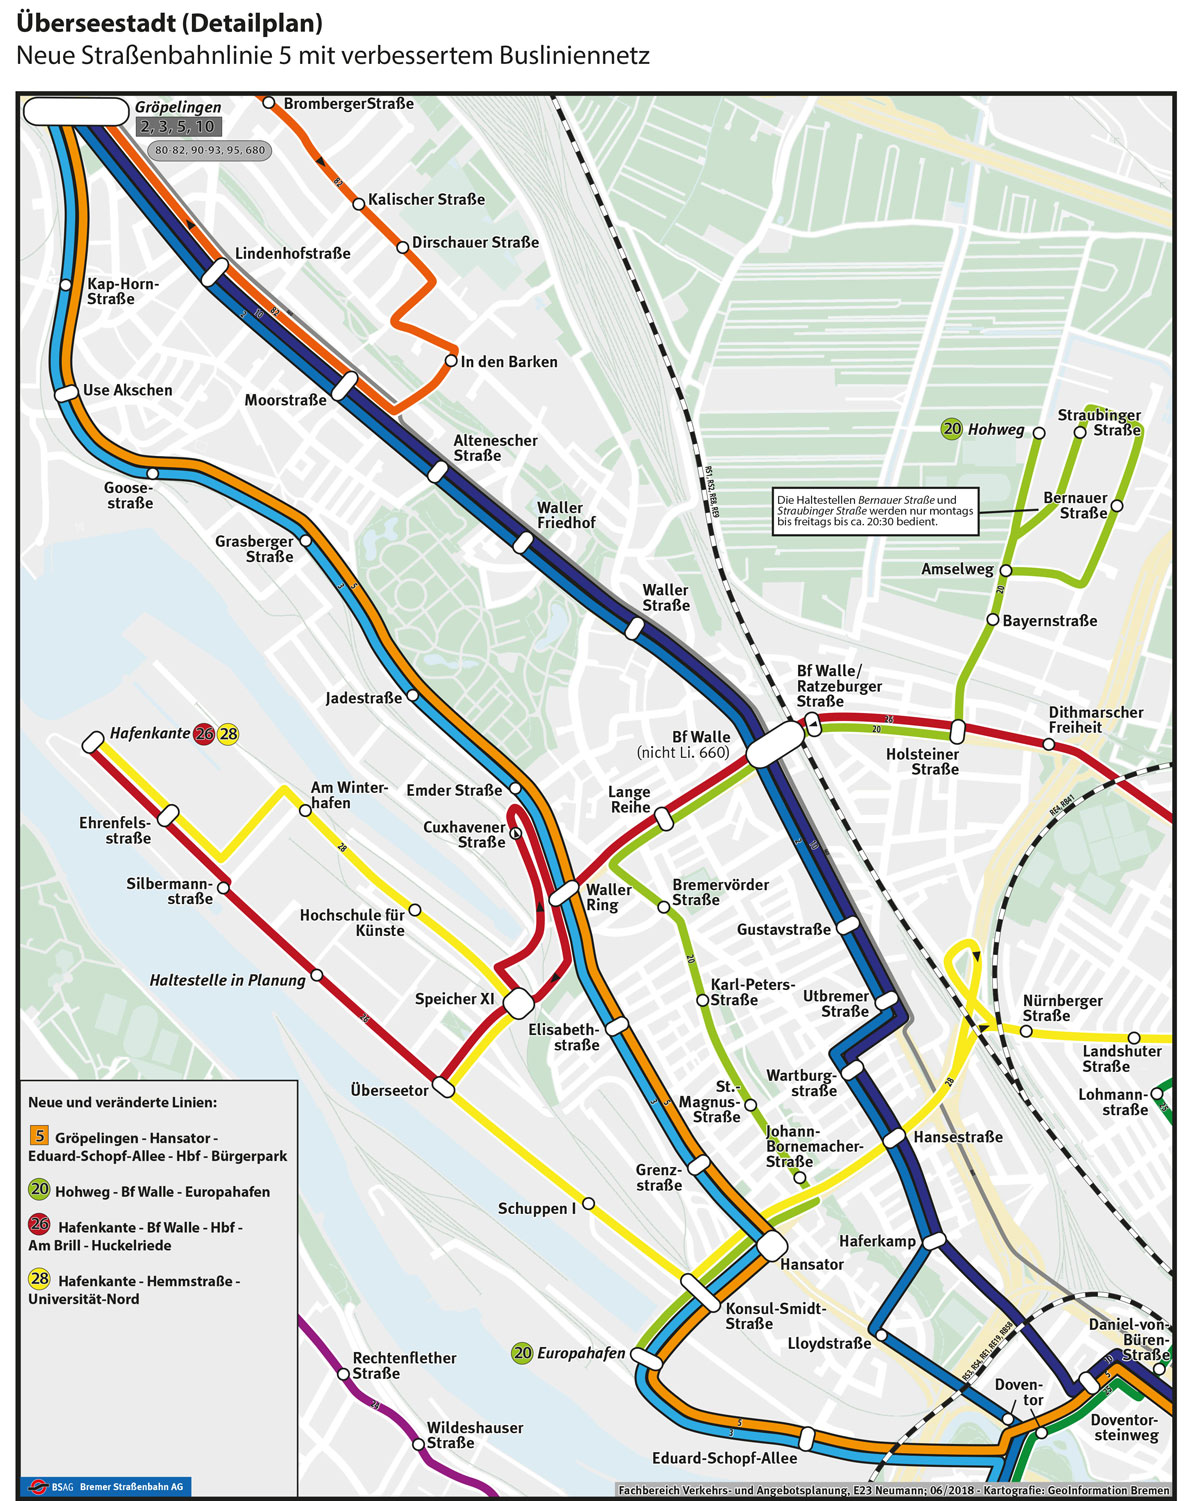 Neues Busnetz in der Überseestadt mit geplanten Verläufen der BSAG-Linien 20, 26 und 28